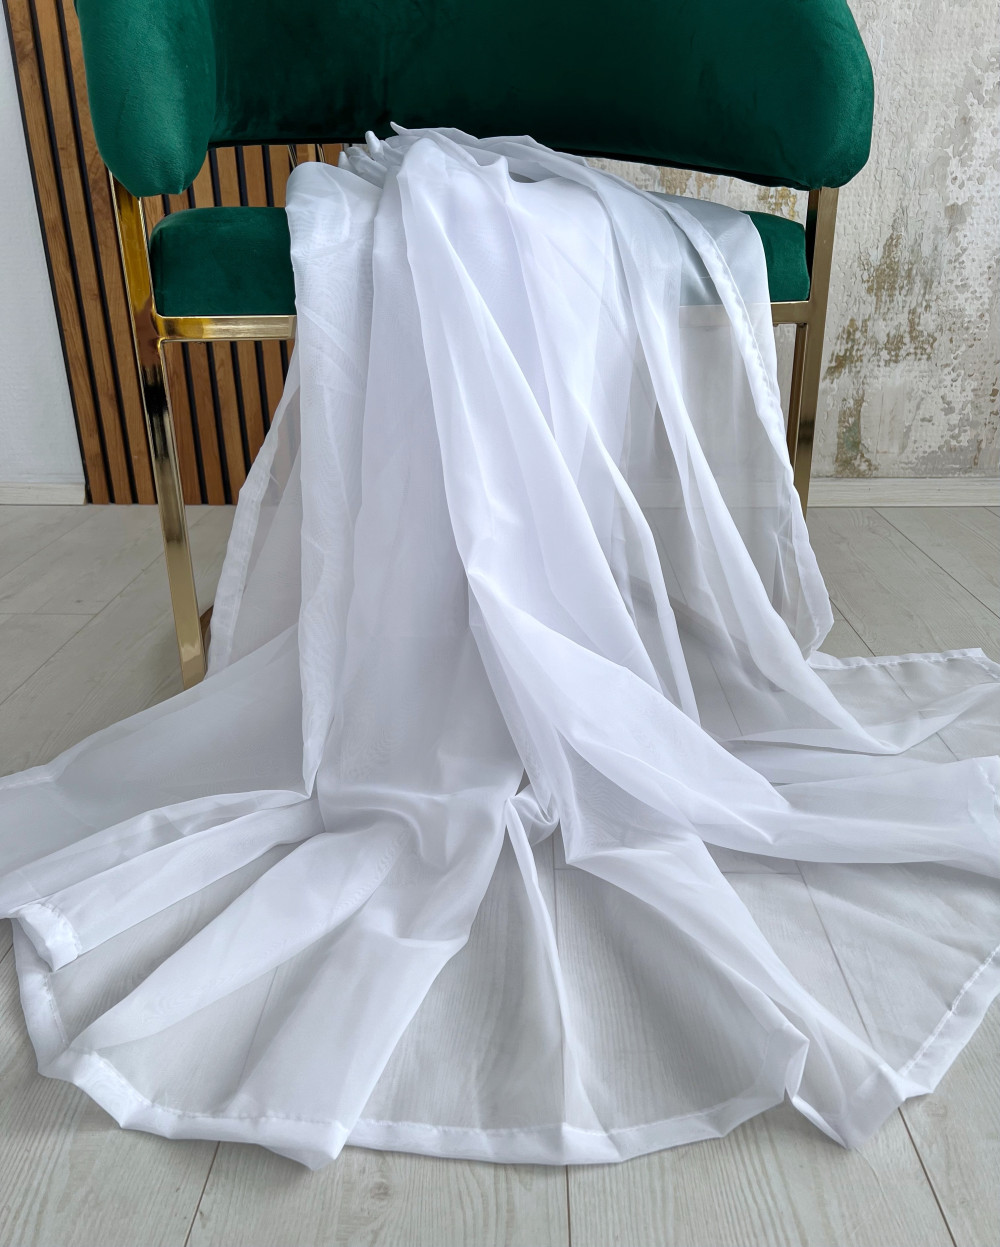   Készre varrt függöny Organza luxury fehér 200x100cm